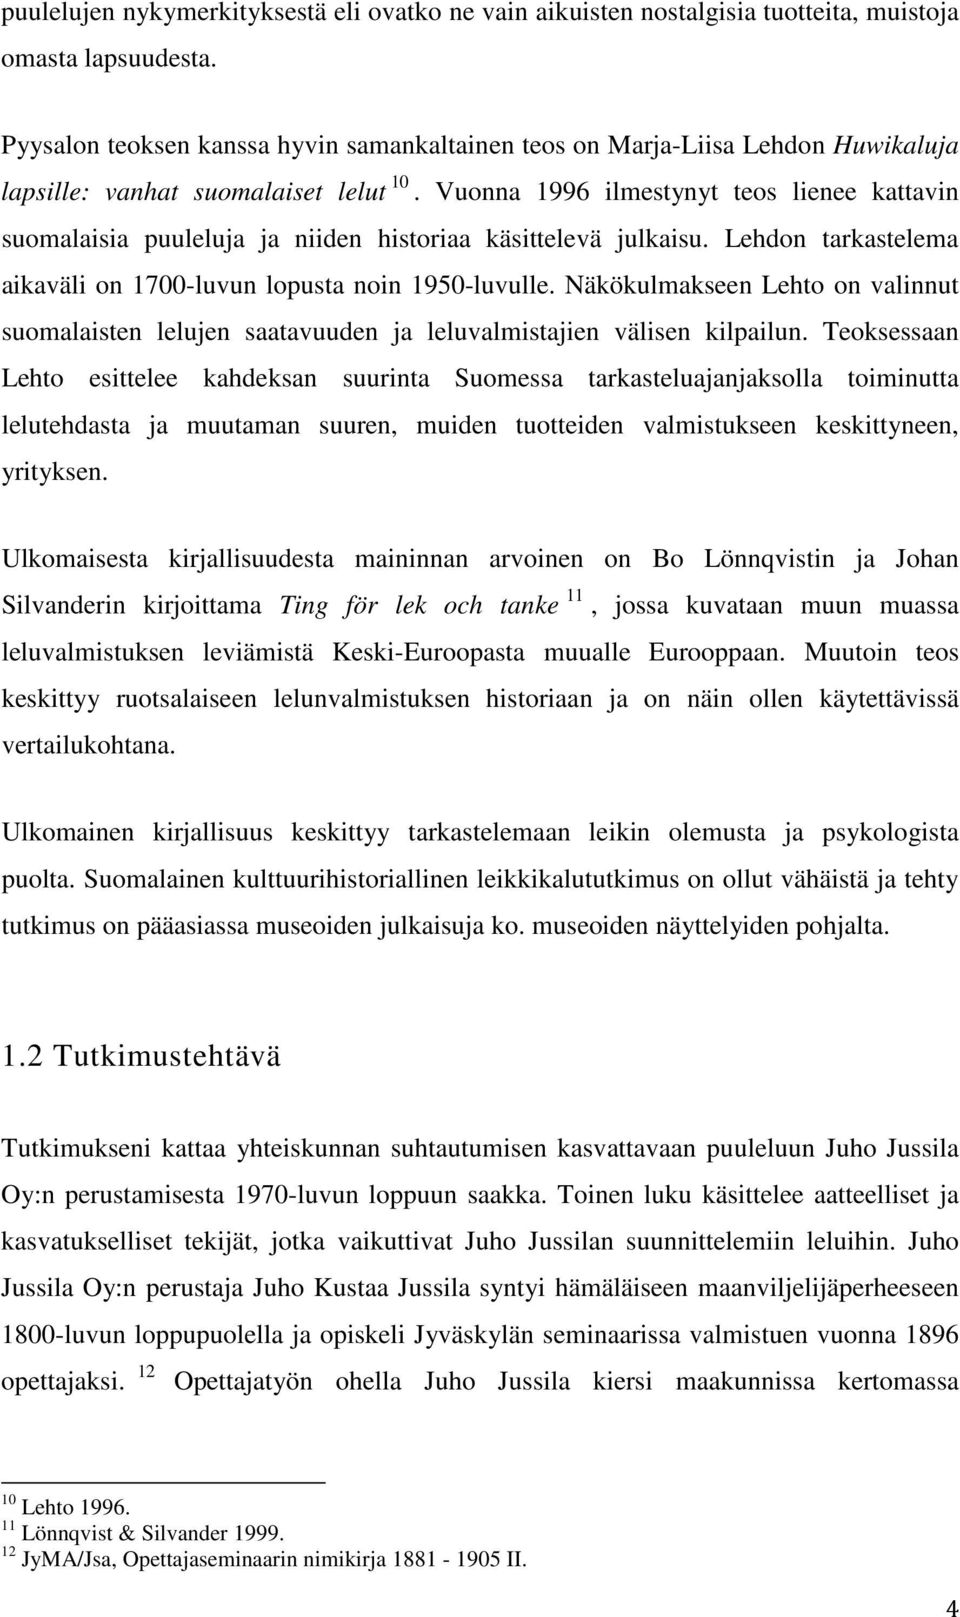 Vuonna 1996 ilmestynyt teos lienee kattavin suomalaisia puuleluja ja niiden historiaa käsittelevä julkaisu. Lehdon tarkastelema aikaväli on 1700-luvun lopusta noin 1950-luvulle.